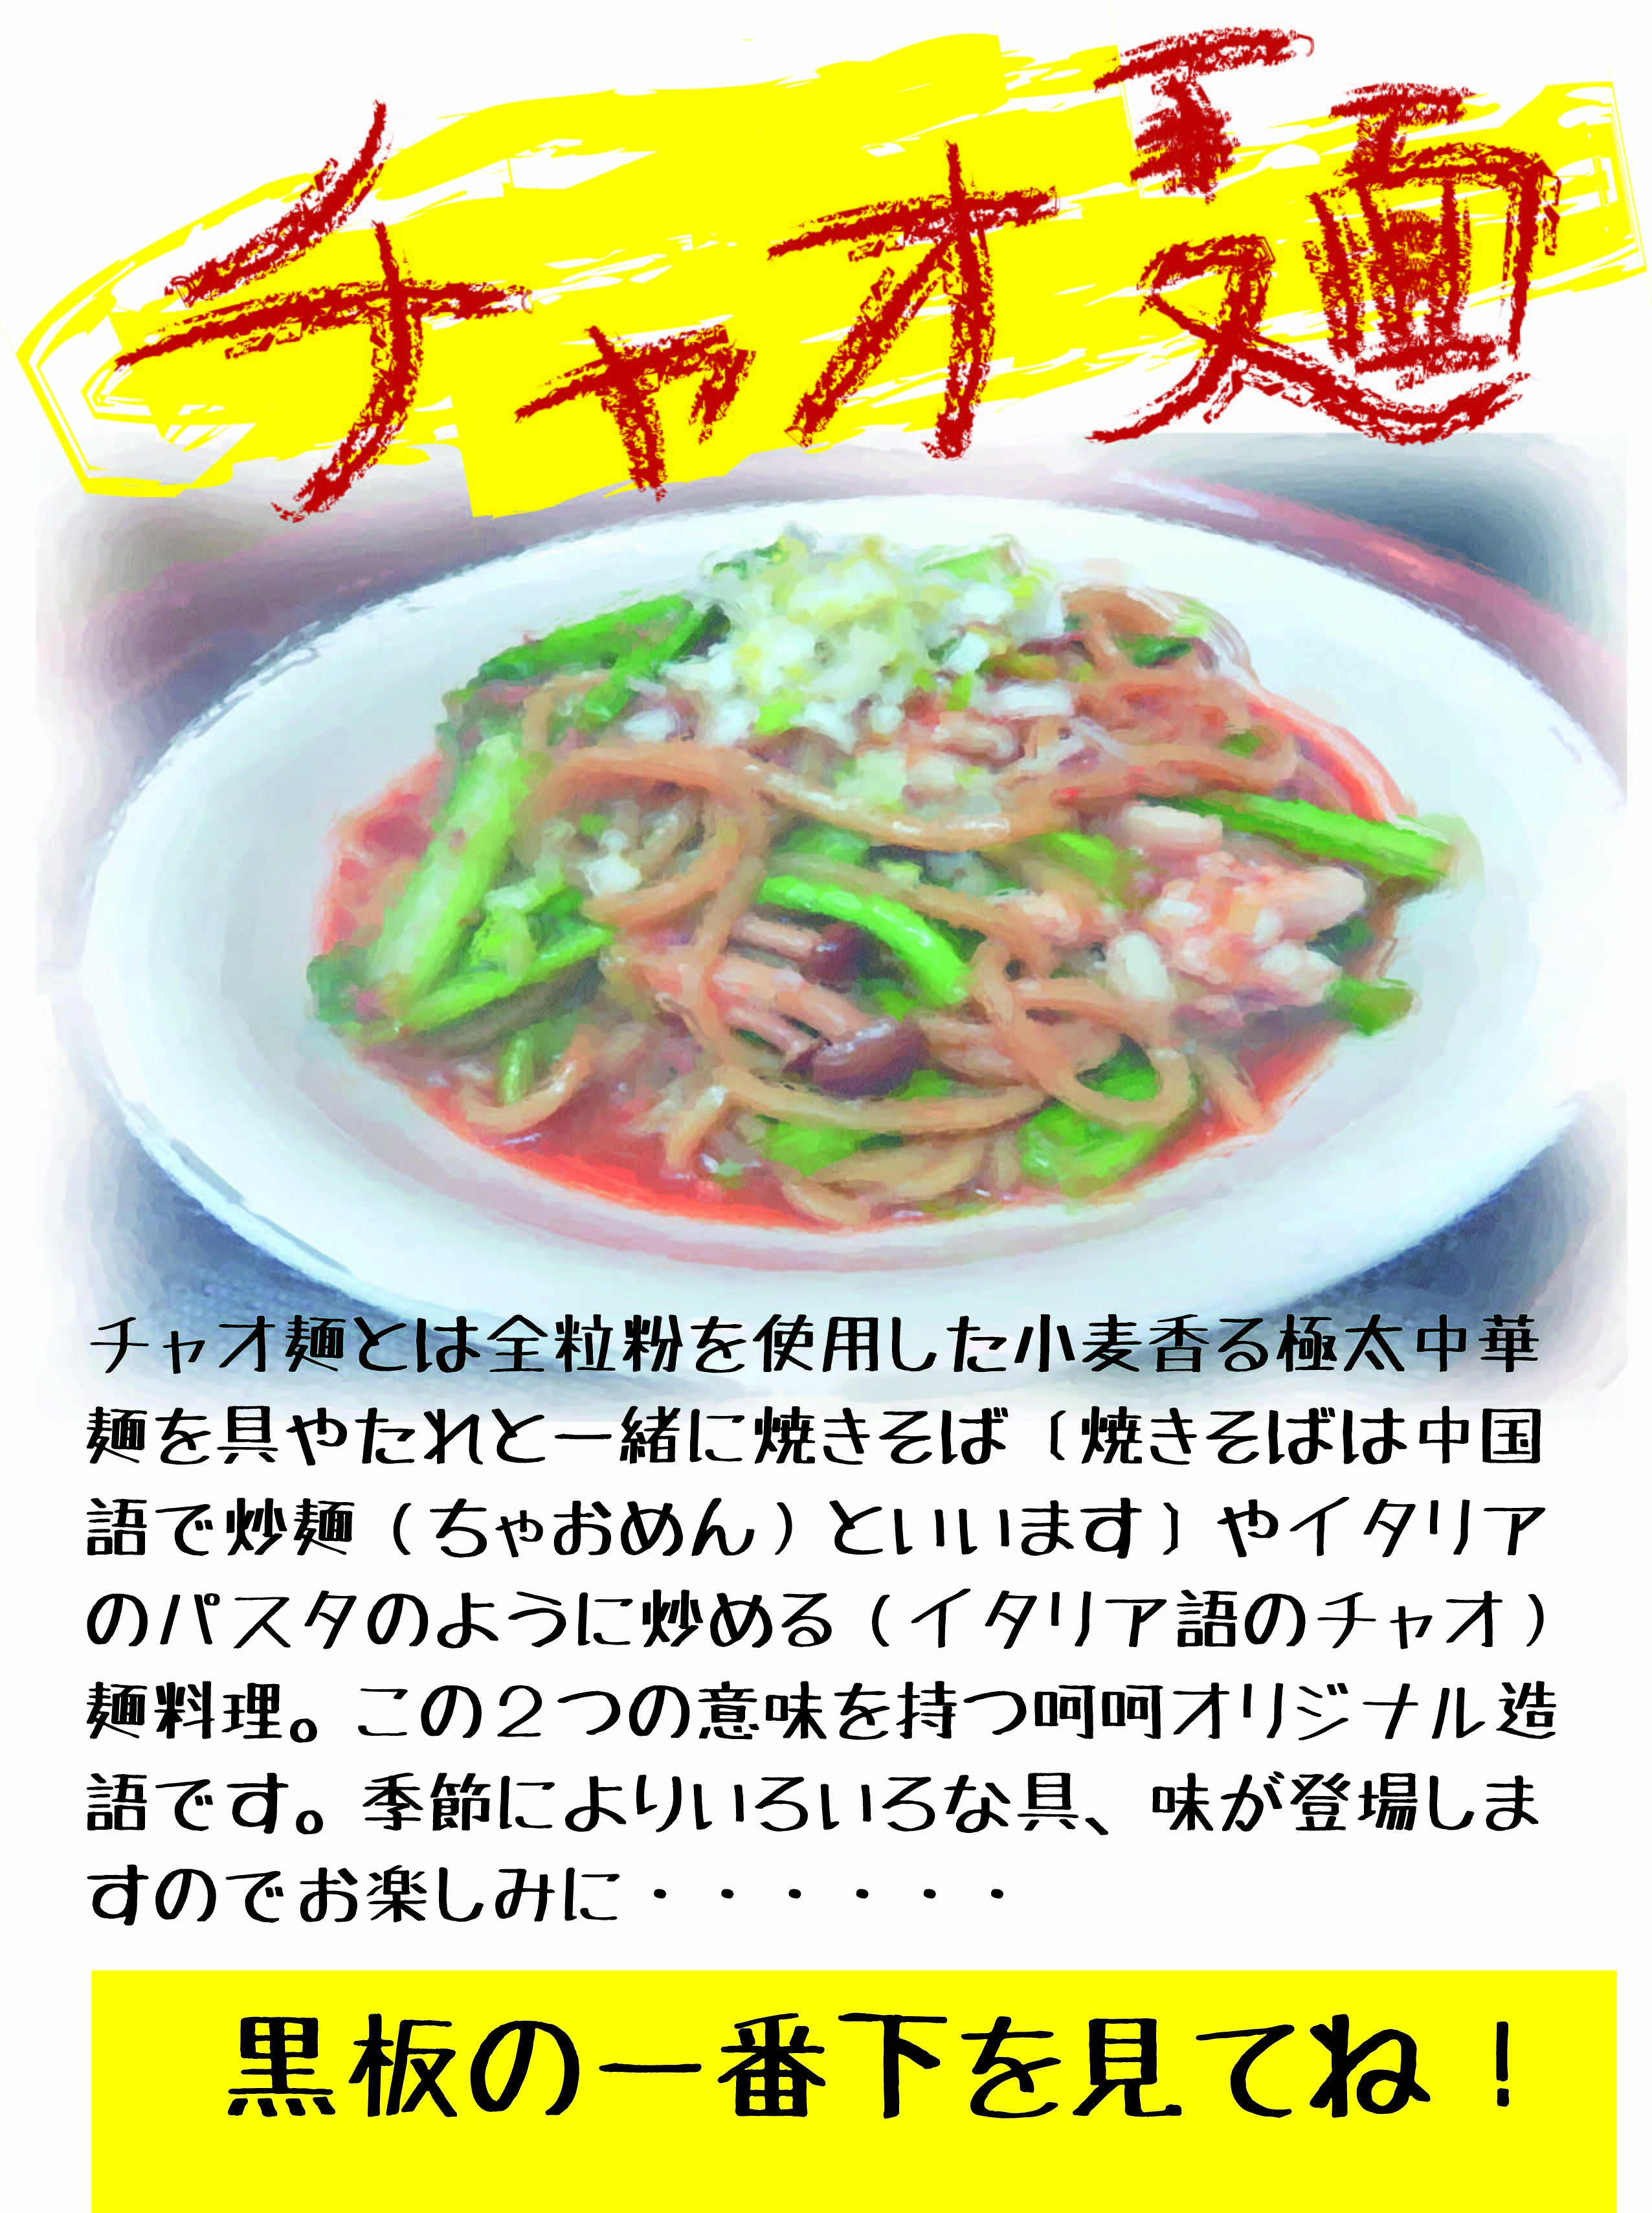 チャオ麺2.jpg